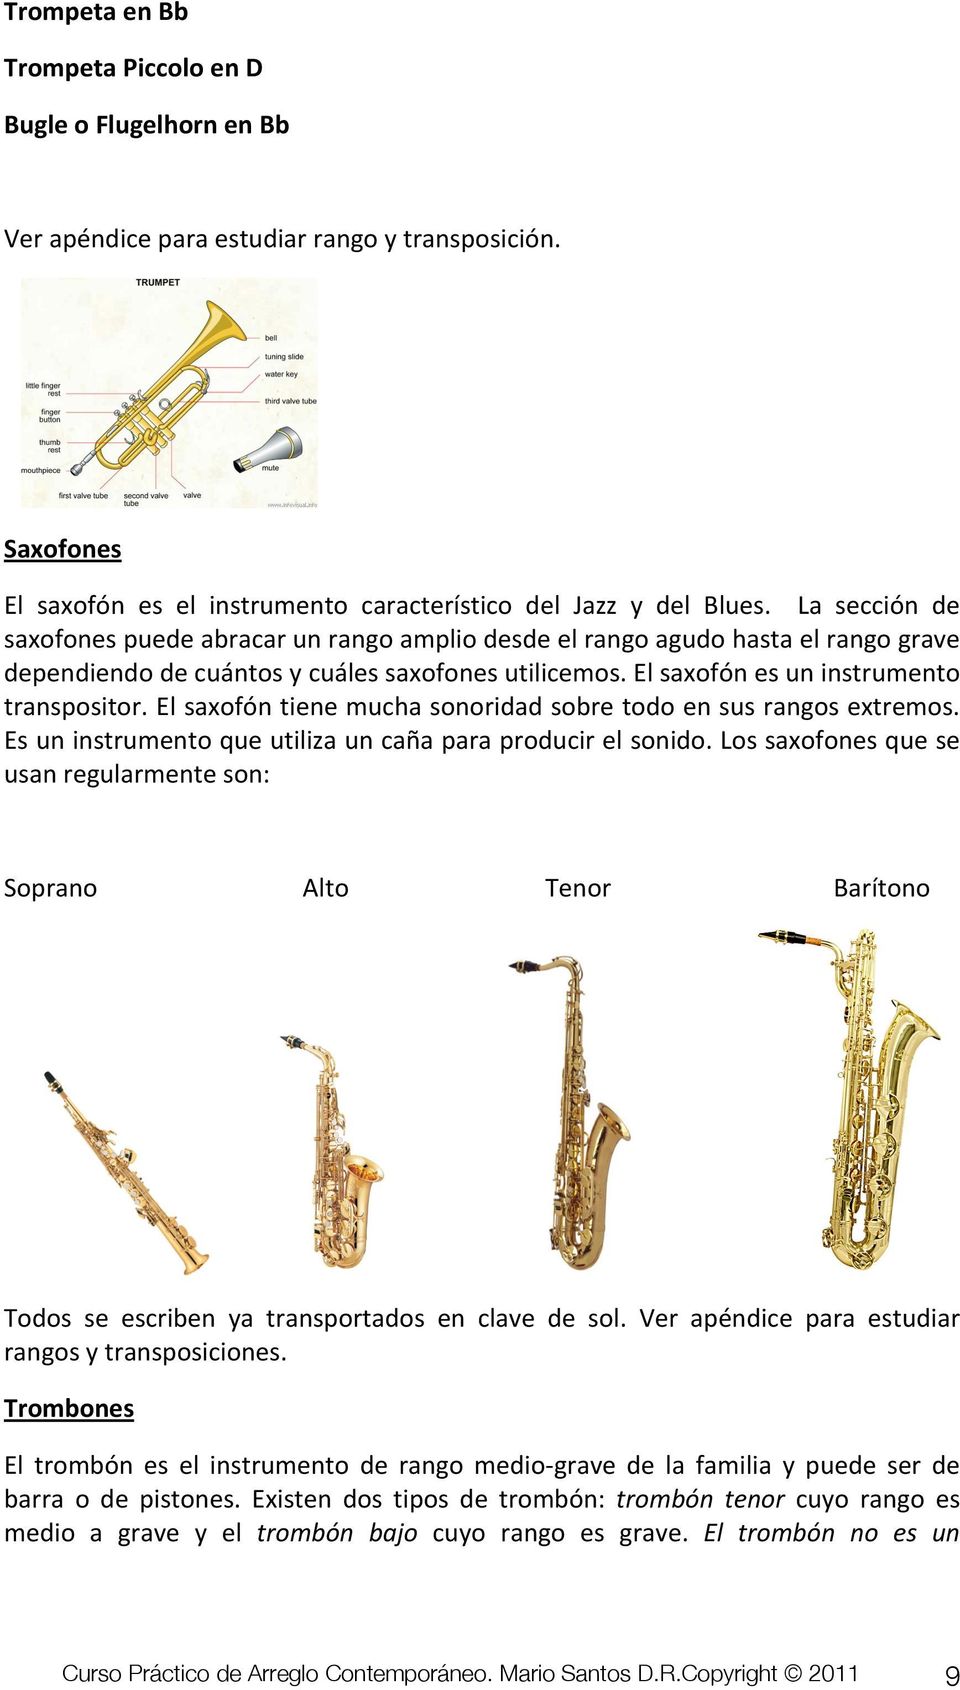 El saxofón tiene mucha sonoridad sobre todo en sus rangos extremos. Es un instrumento que utiliza un caña para producir el sonido.